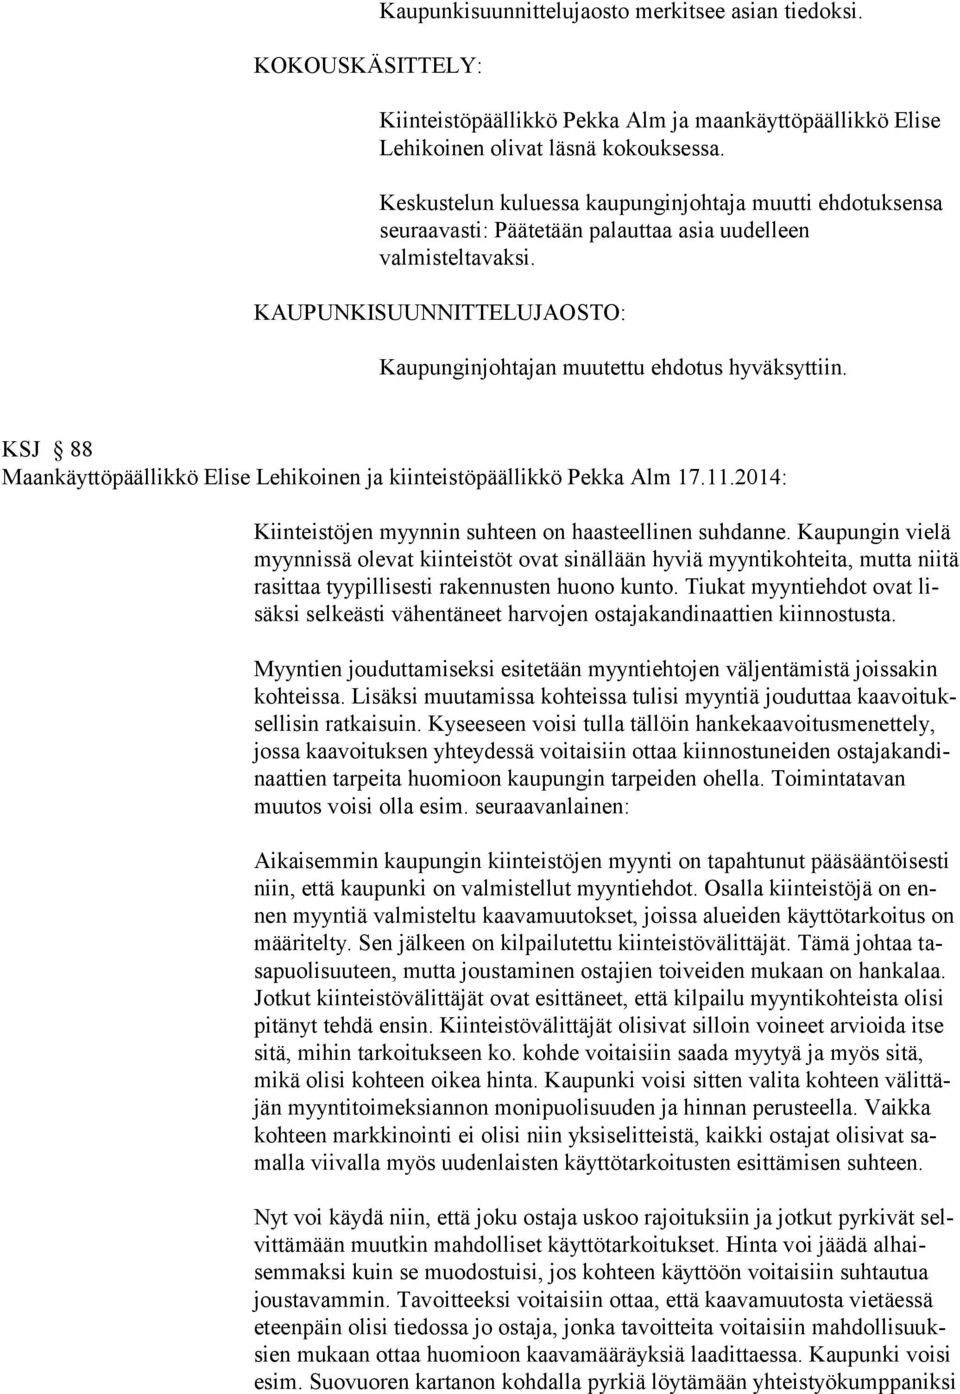 KSJ 88 Maankäyttöpäällikkö Elise Lehikoinen ja kiinteistöpäällikkö Pekka Alm 17.11.2014: Kiinteistöjen myynnin suhteen on haasteellinen suhdanne.